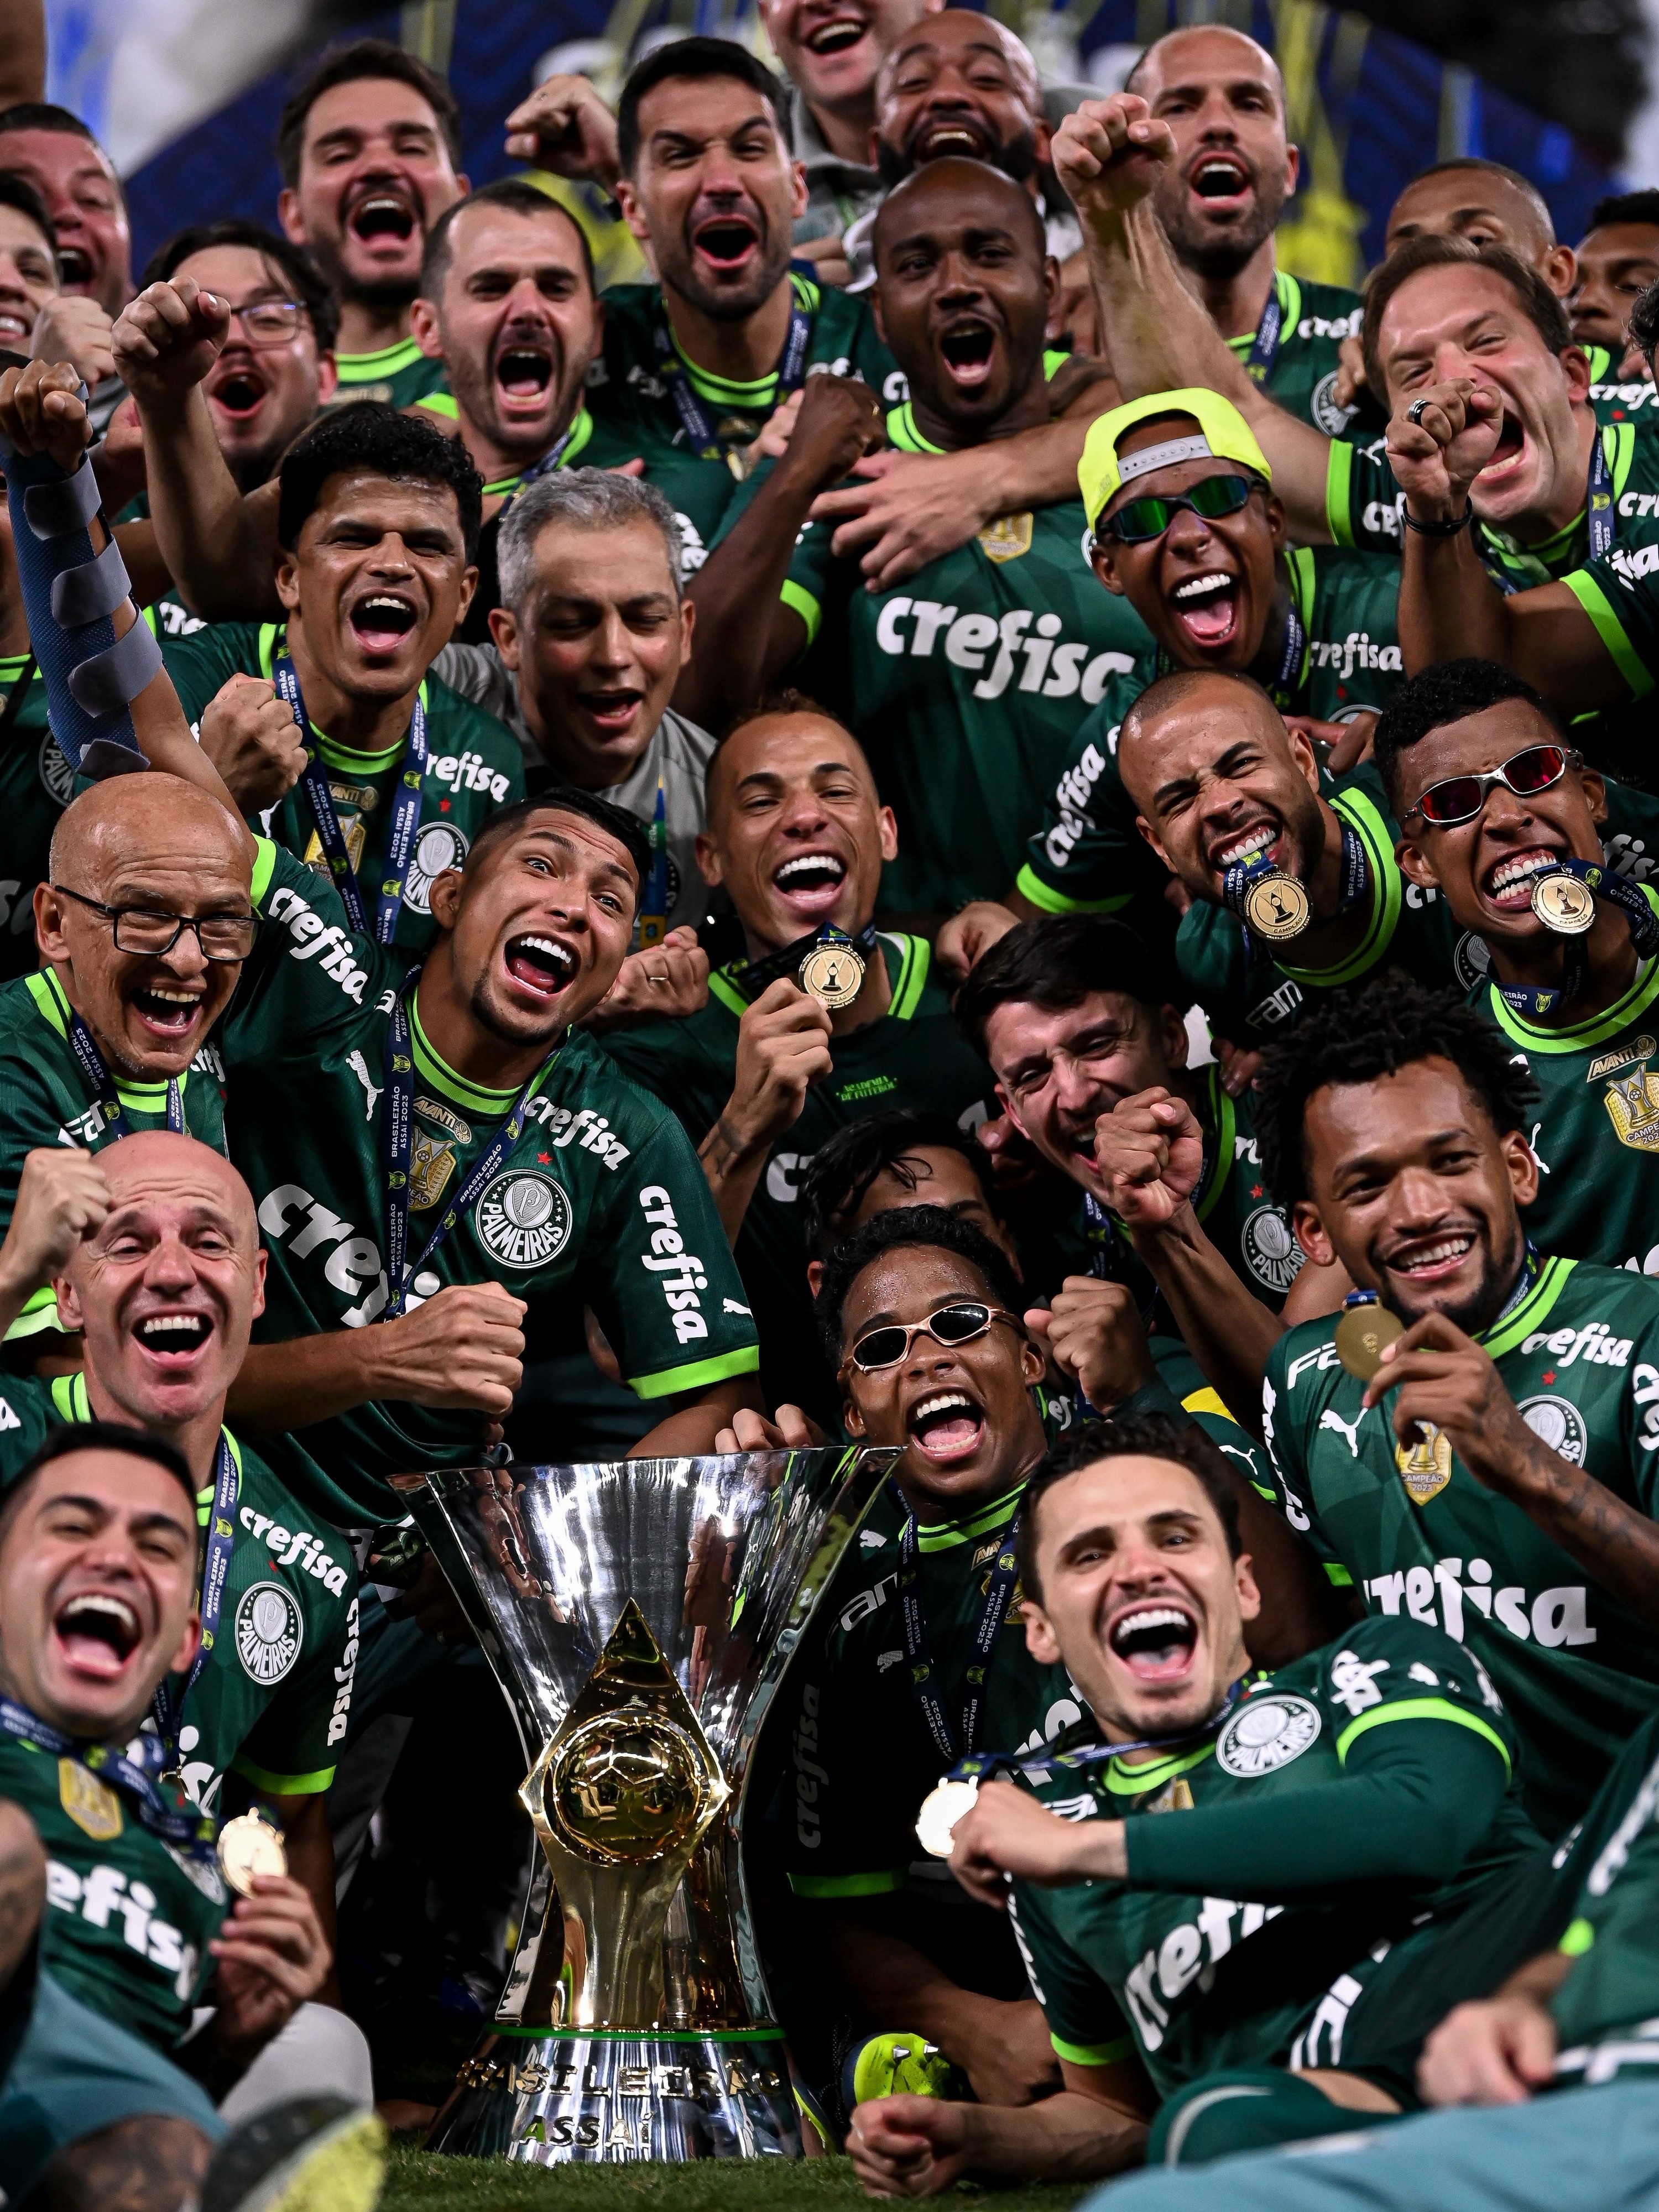 Campeonato Brasileiro: história e campeões - Brasil Escola